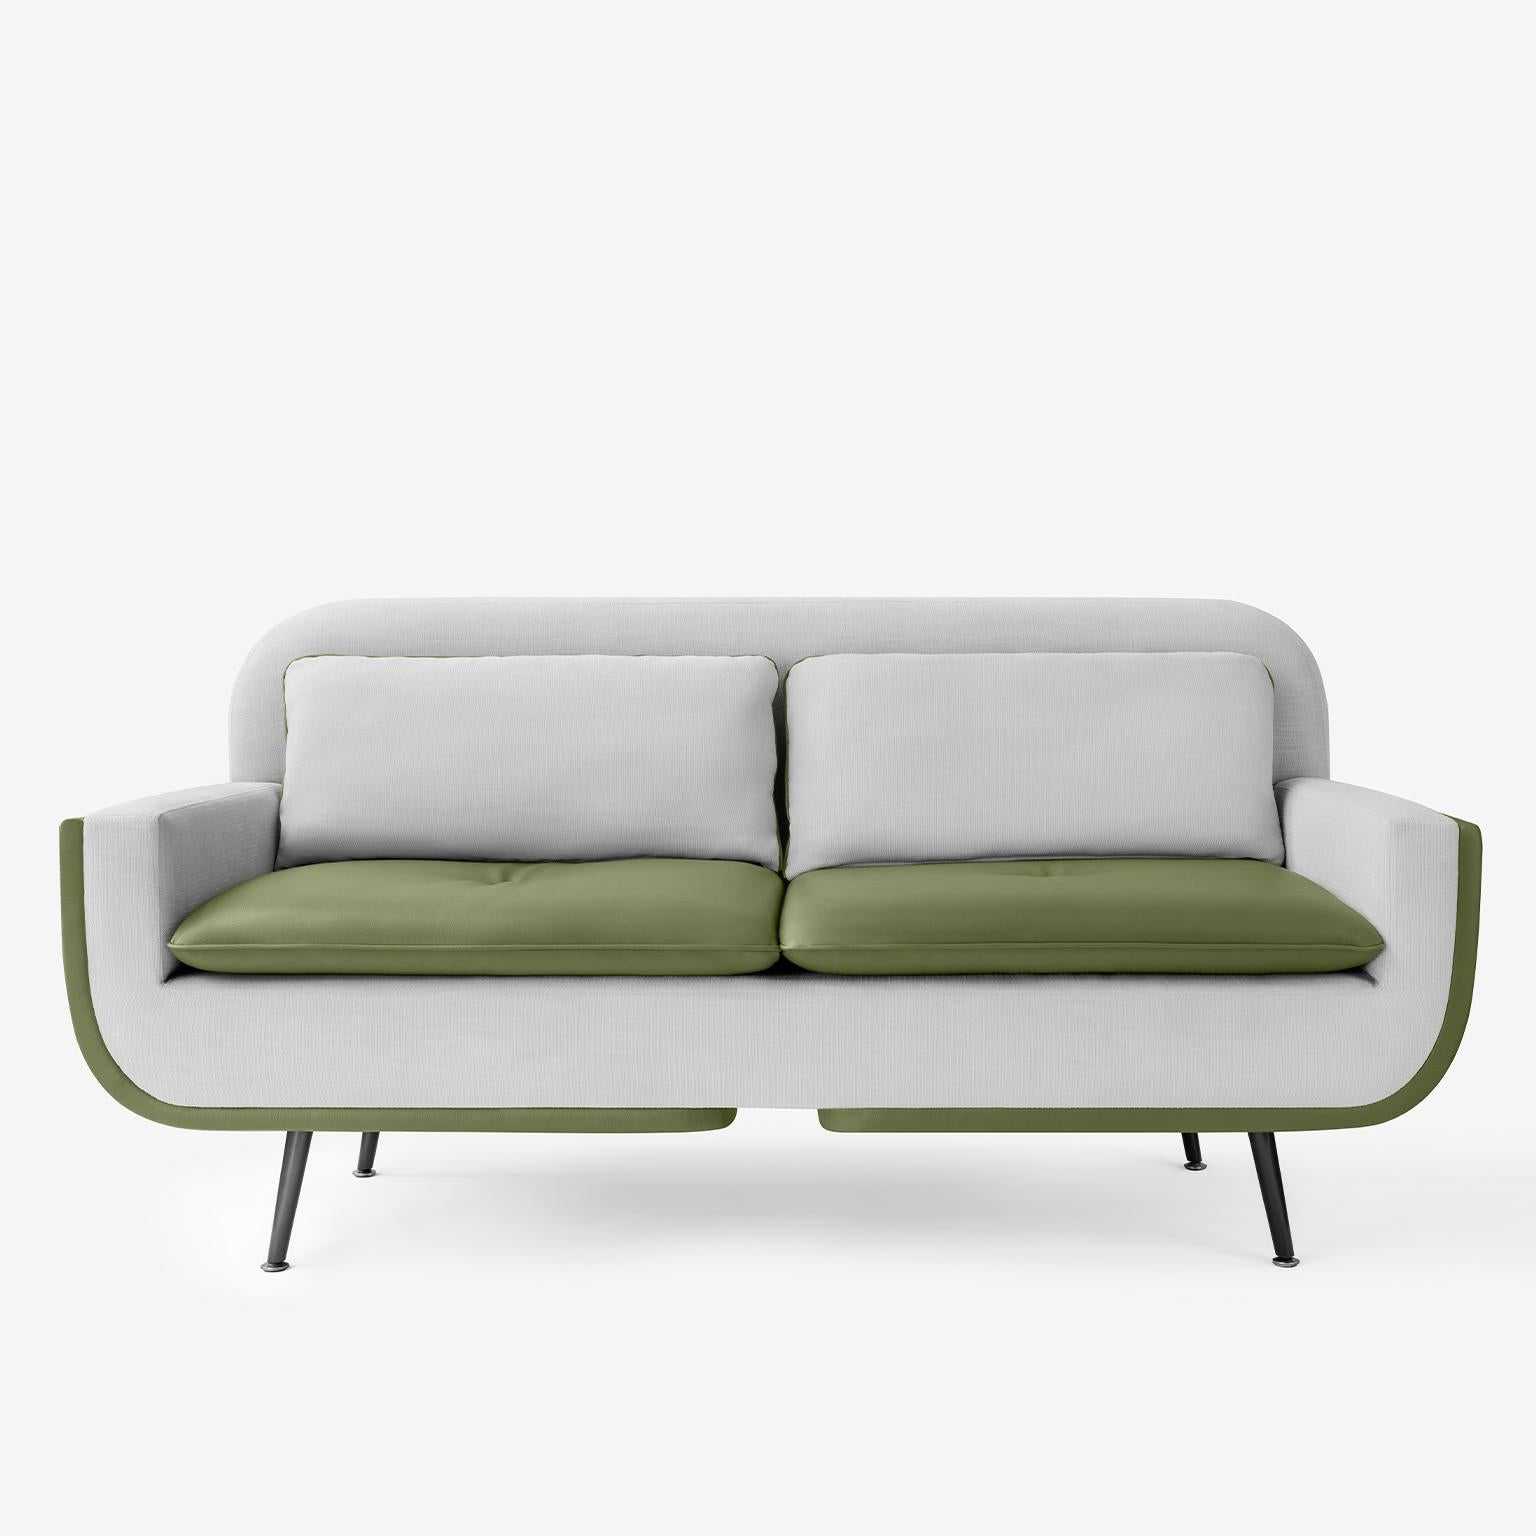 Das Zweisitzer-Sofa Up wurde entwickelt, um sowohl Form als auch Komfort zu maximieren und verleiht Ihrem Raum einen einzigartigen Stil.

Sie können verschiedene Stoffe für die Vorder- und Rückseite des Sofas kombinieren oder nur einen Stoff wählen.